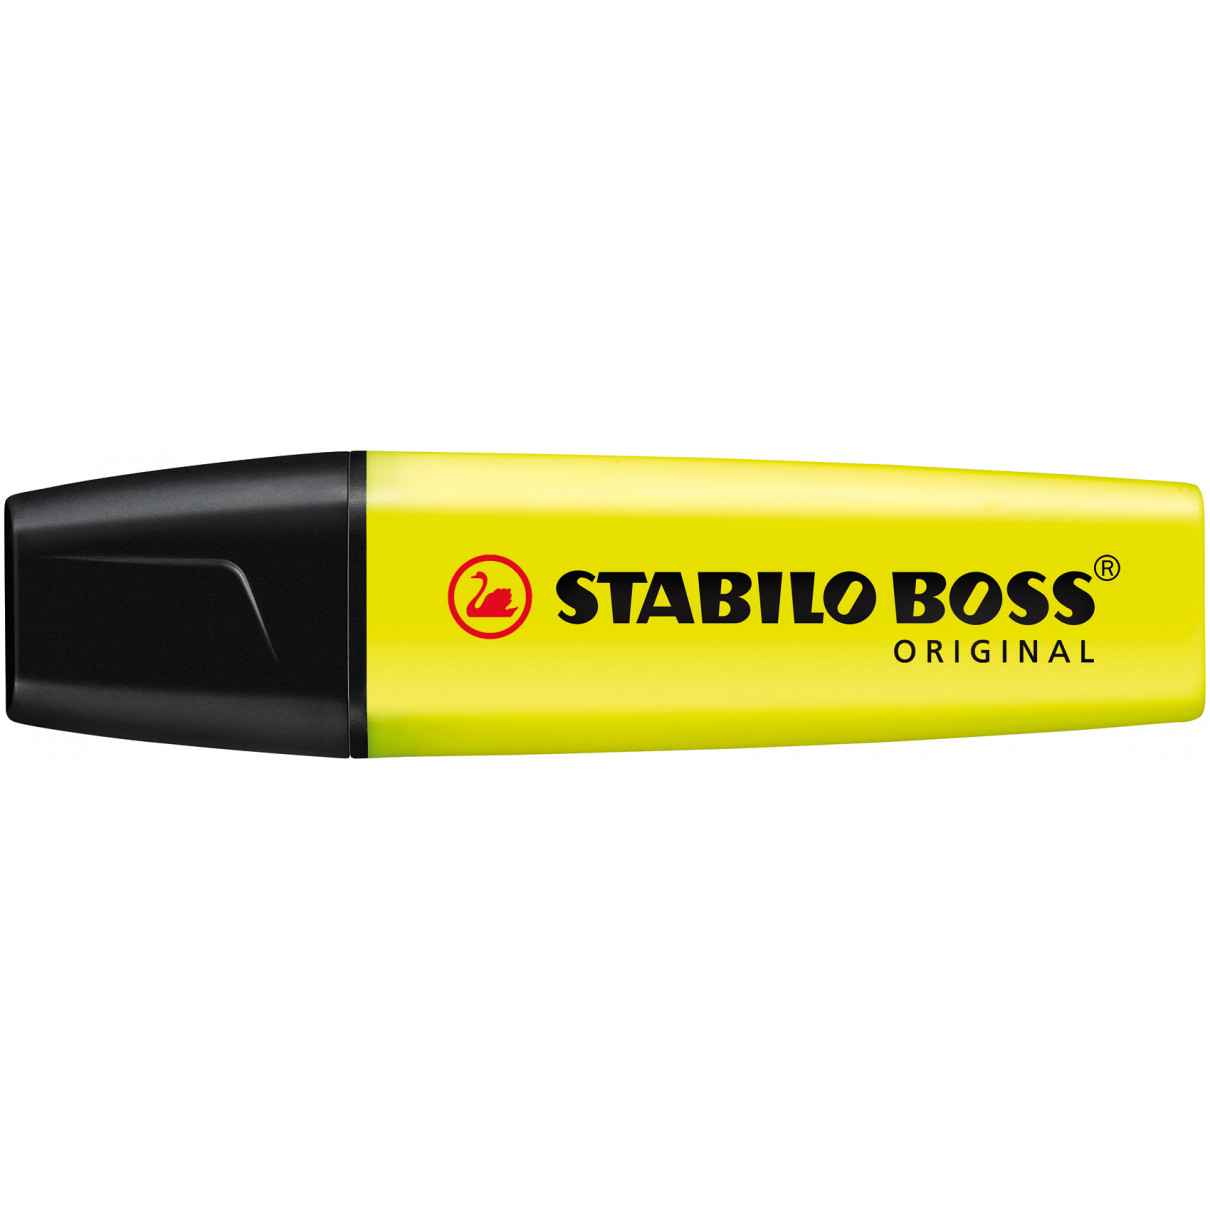 STABILO BOSS Original Highlighter